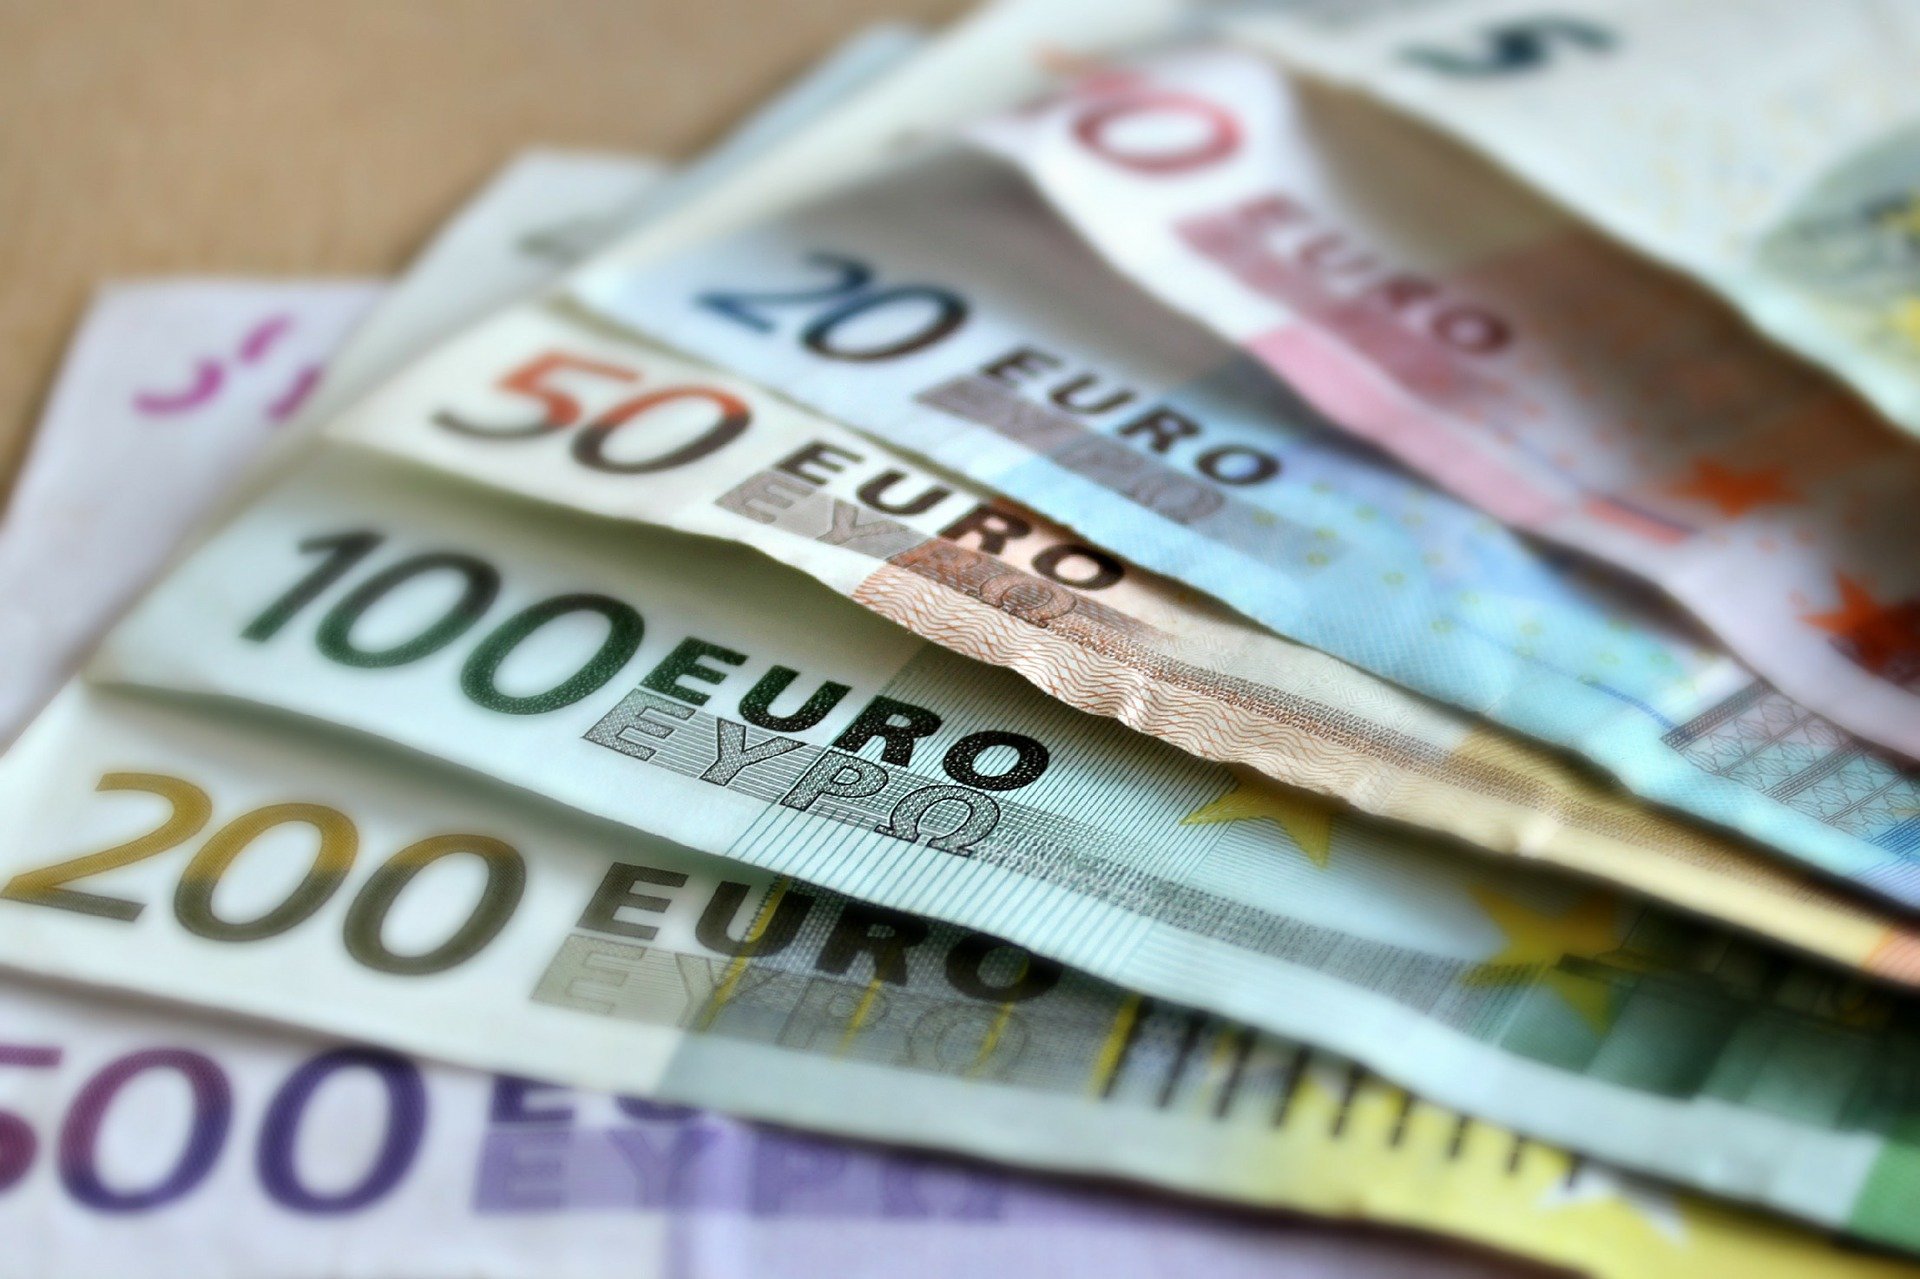 Европейские купюры имеют единый дизайн. За 20 лет он практически не изменился, однако в юбилейный год Европейский центральный банк начинает работу по обновлению купюр. Фото: pixabay.com